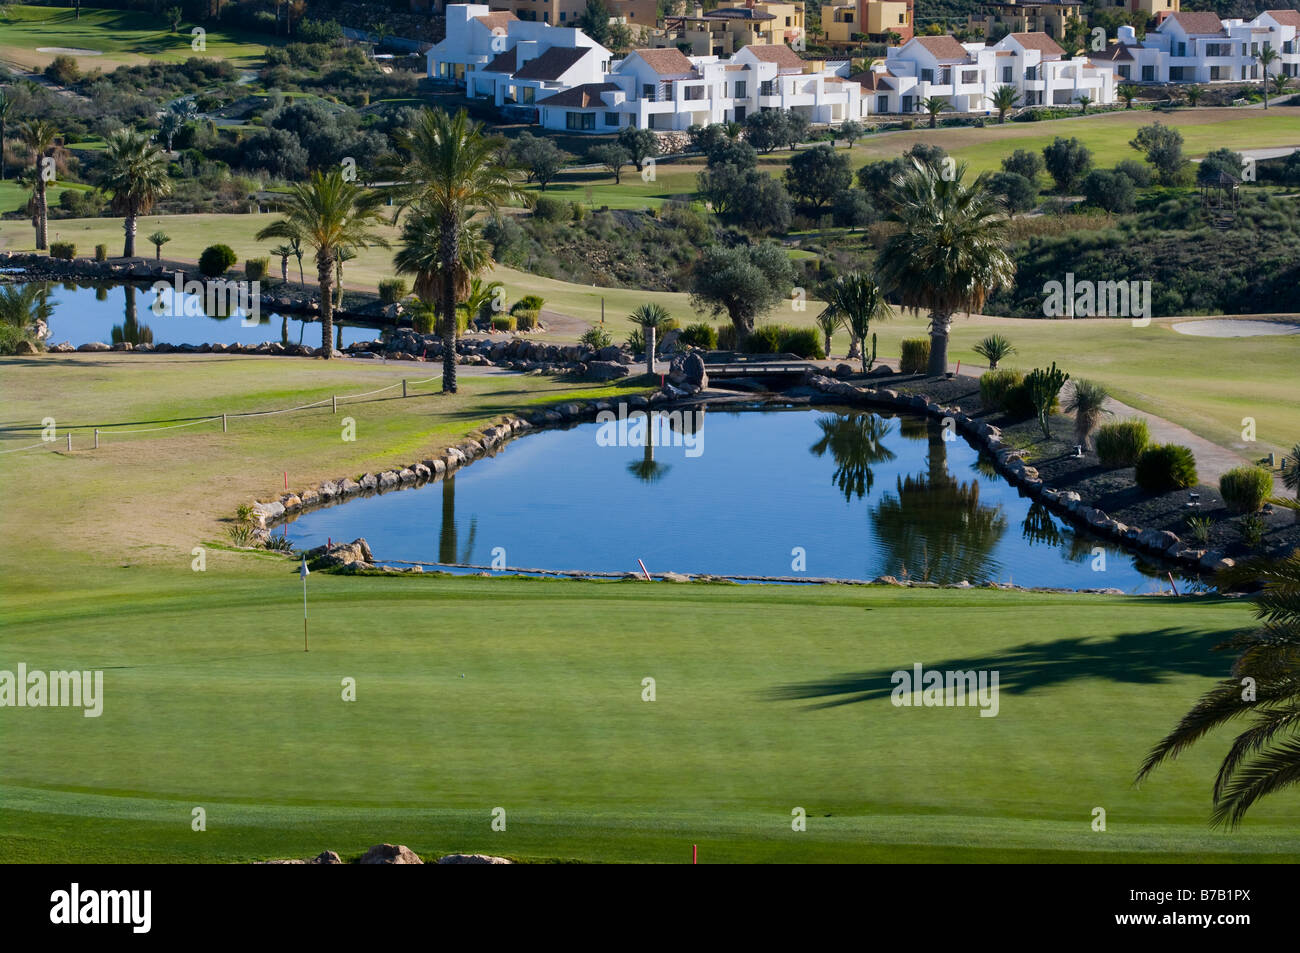 The Valle Del Este Golf Course Vera Almeria Spain Spanish Golf Resorts Courses Stock Photo